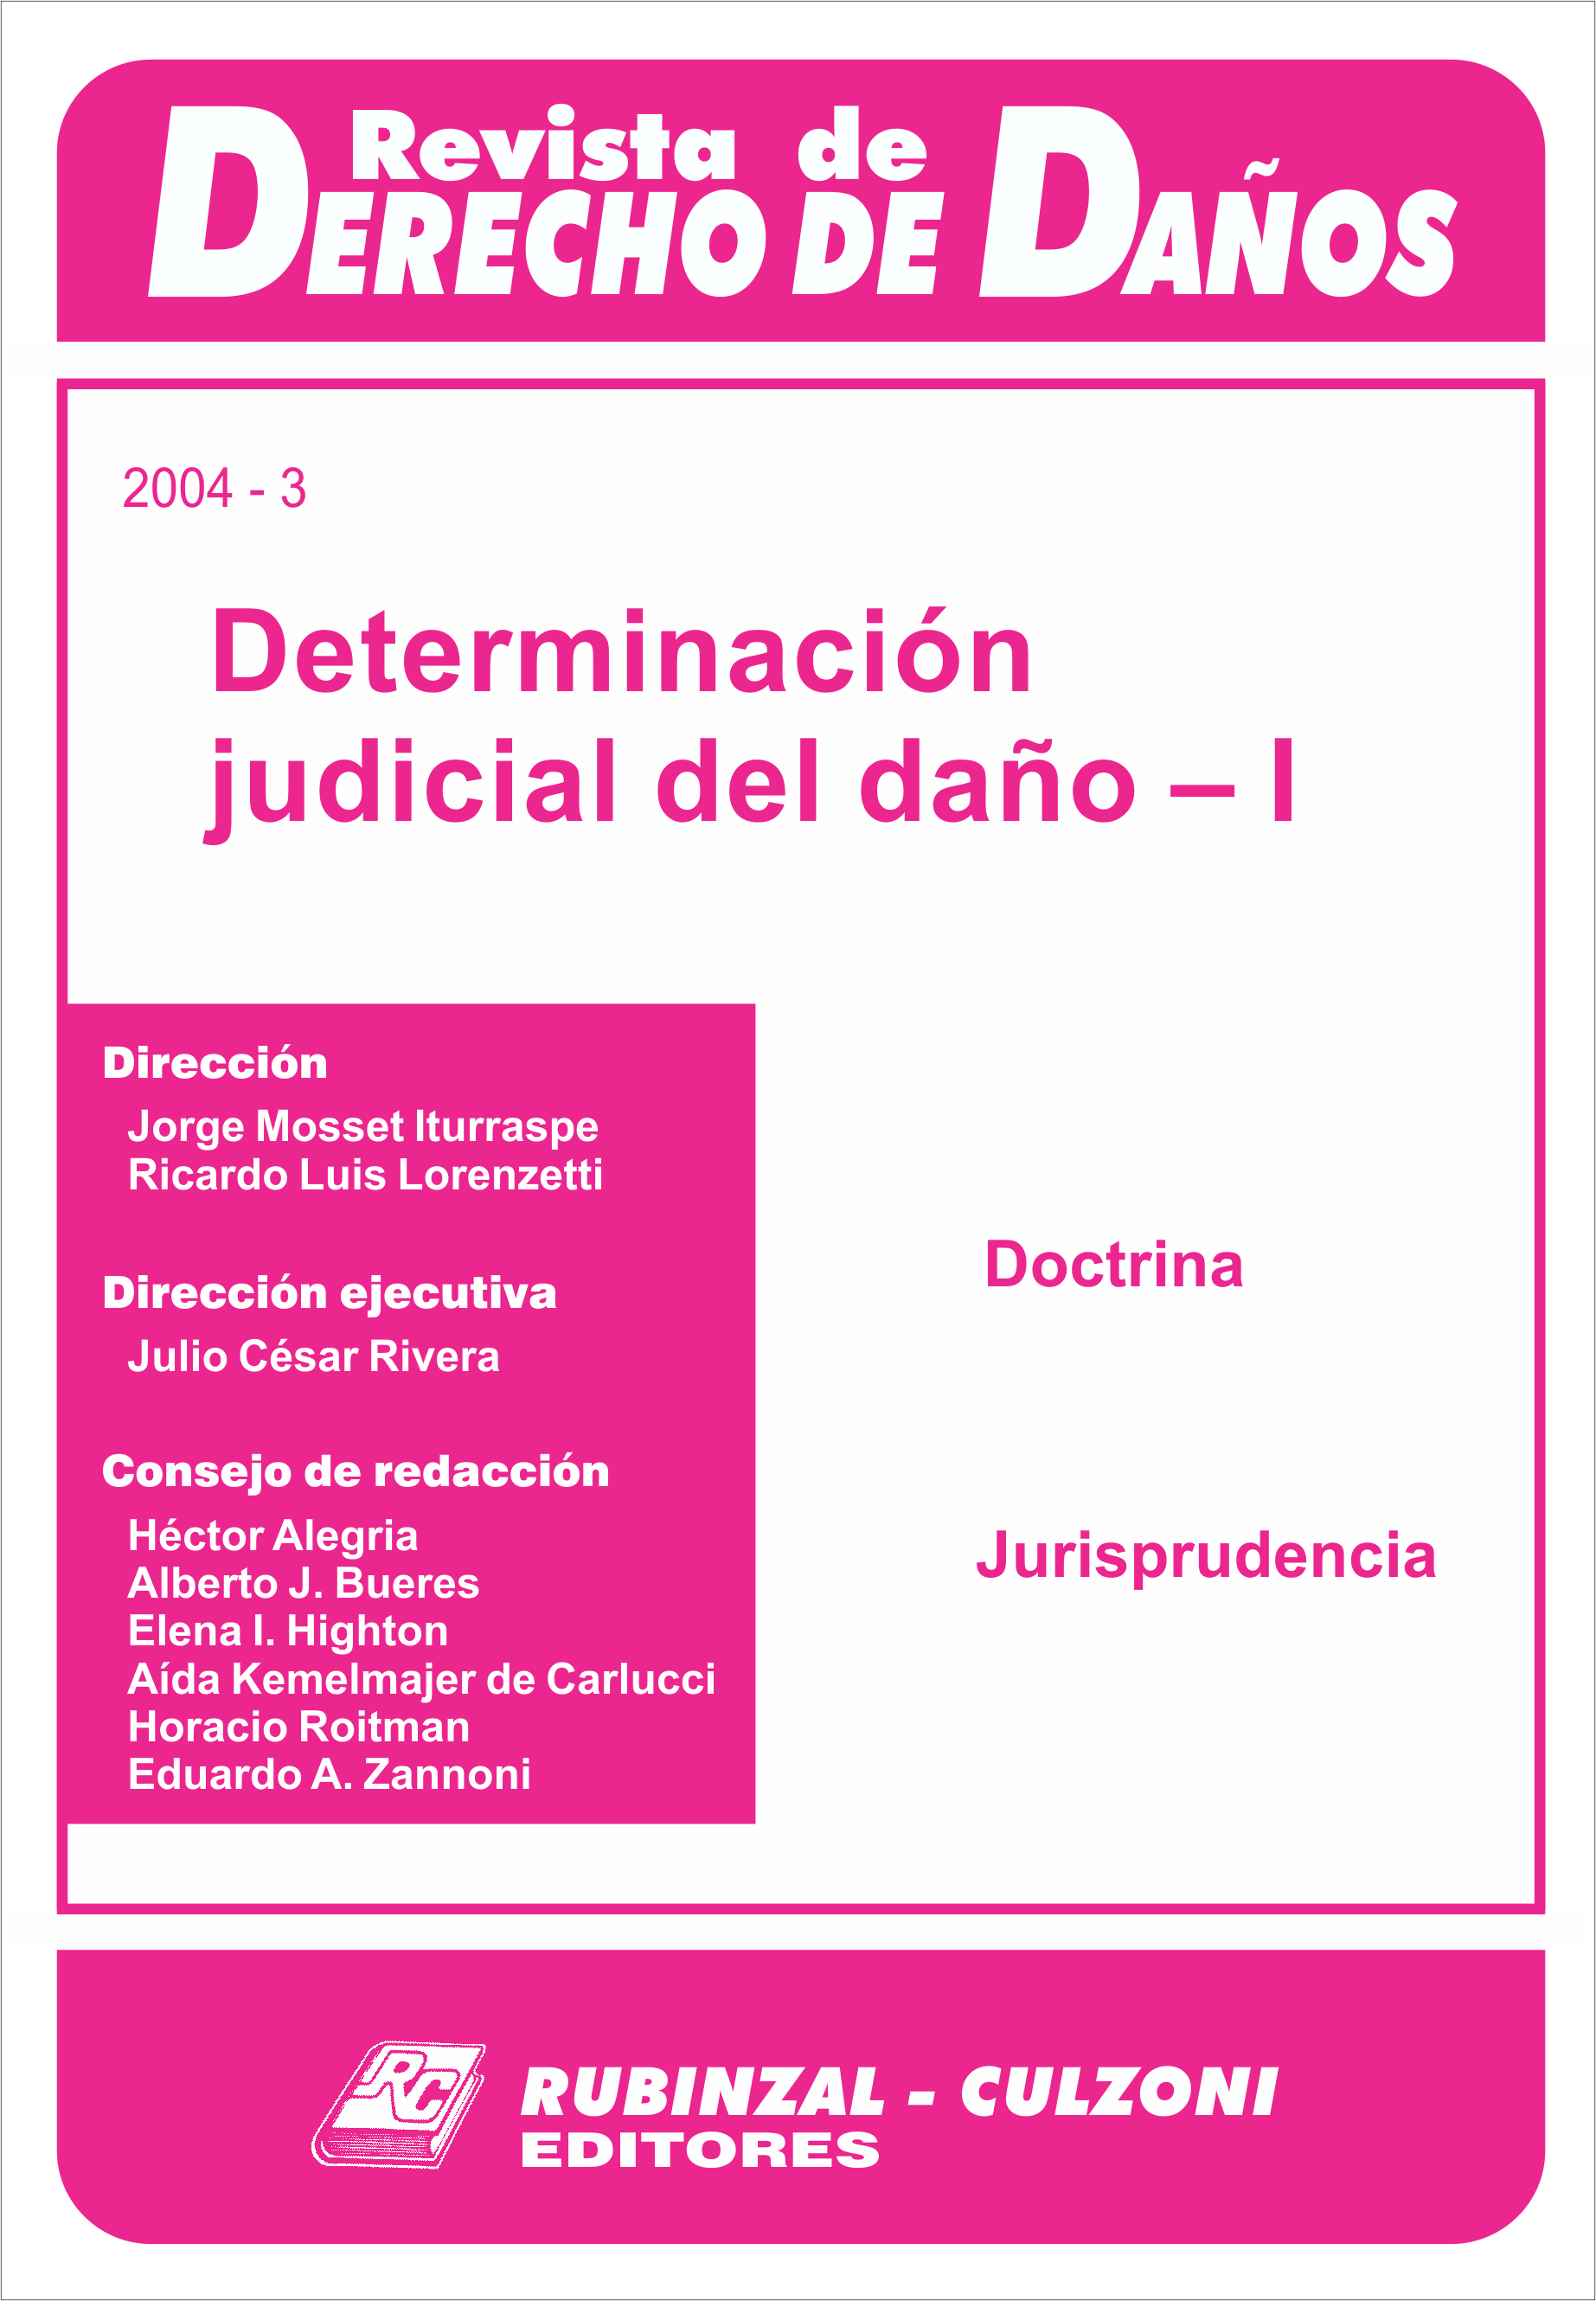 Determinación judicial del daño - I. [2004-3]